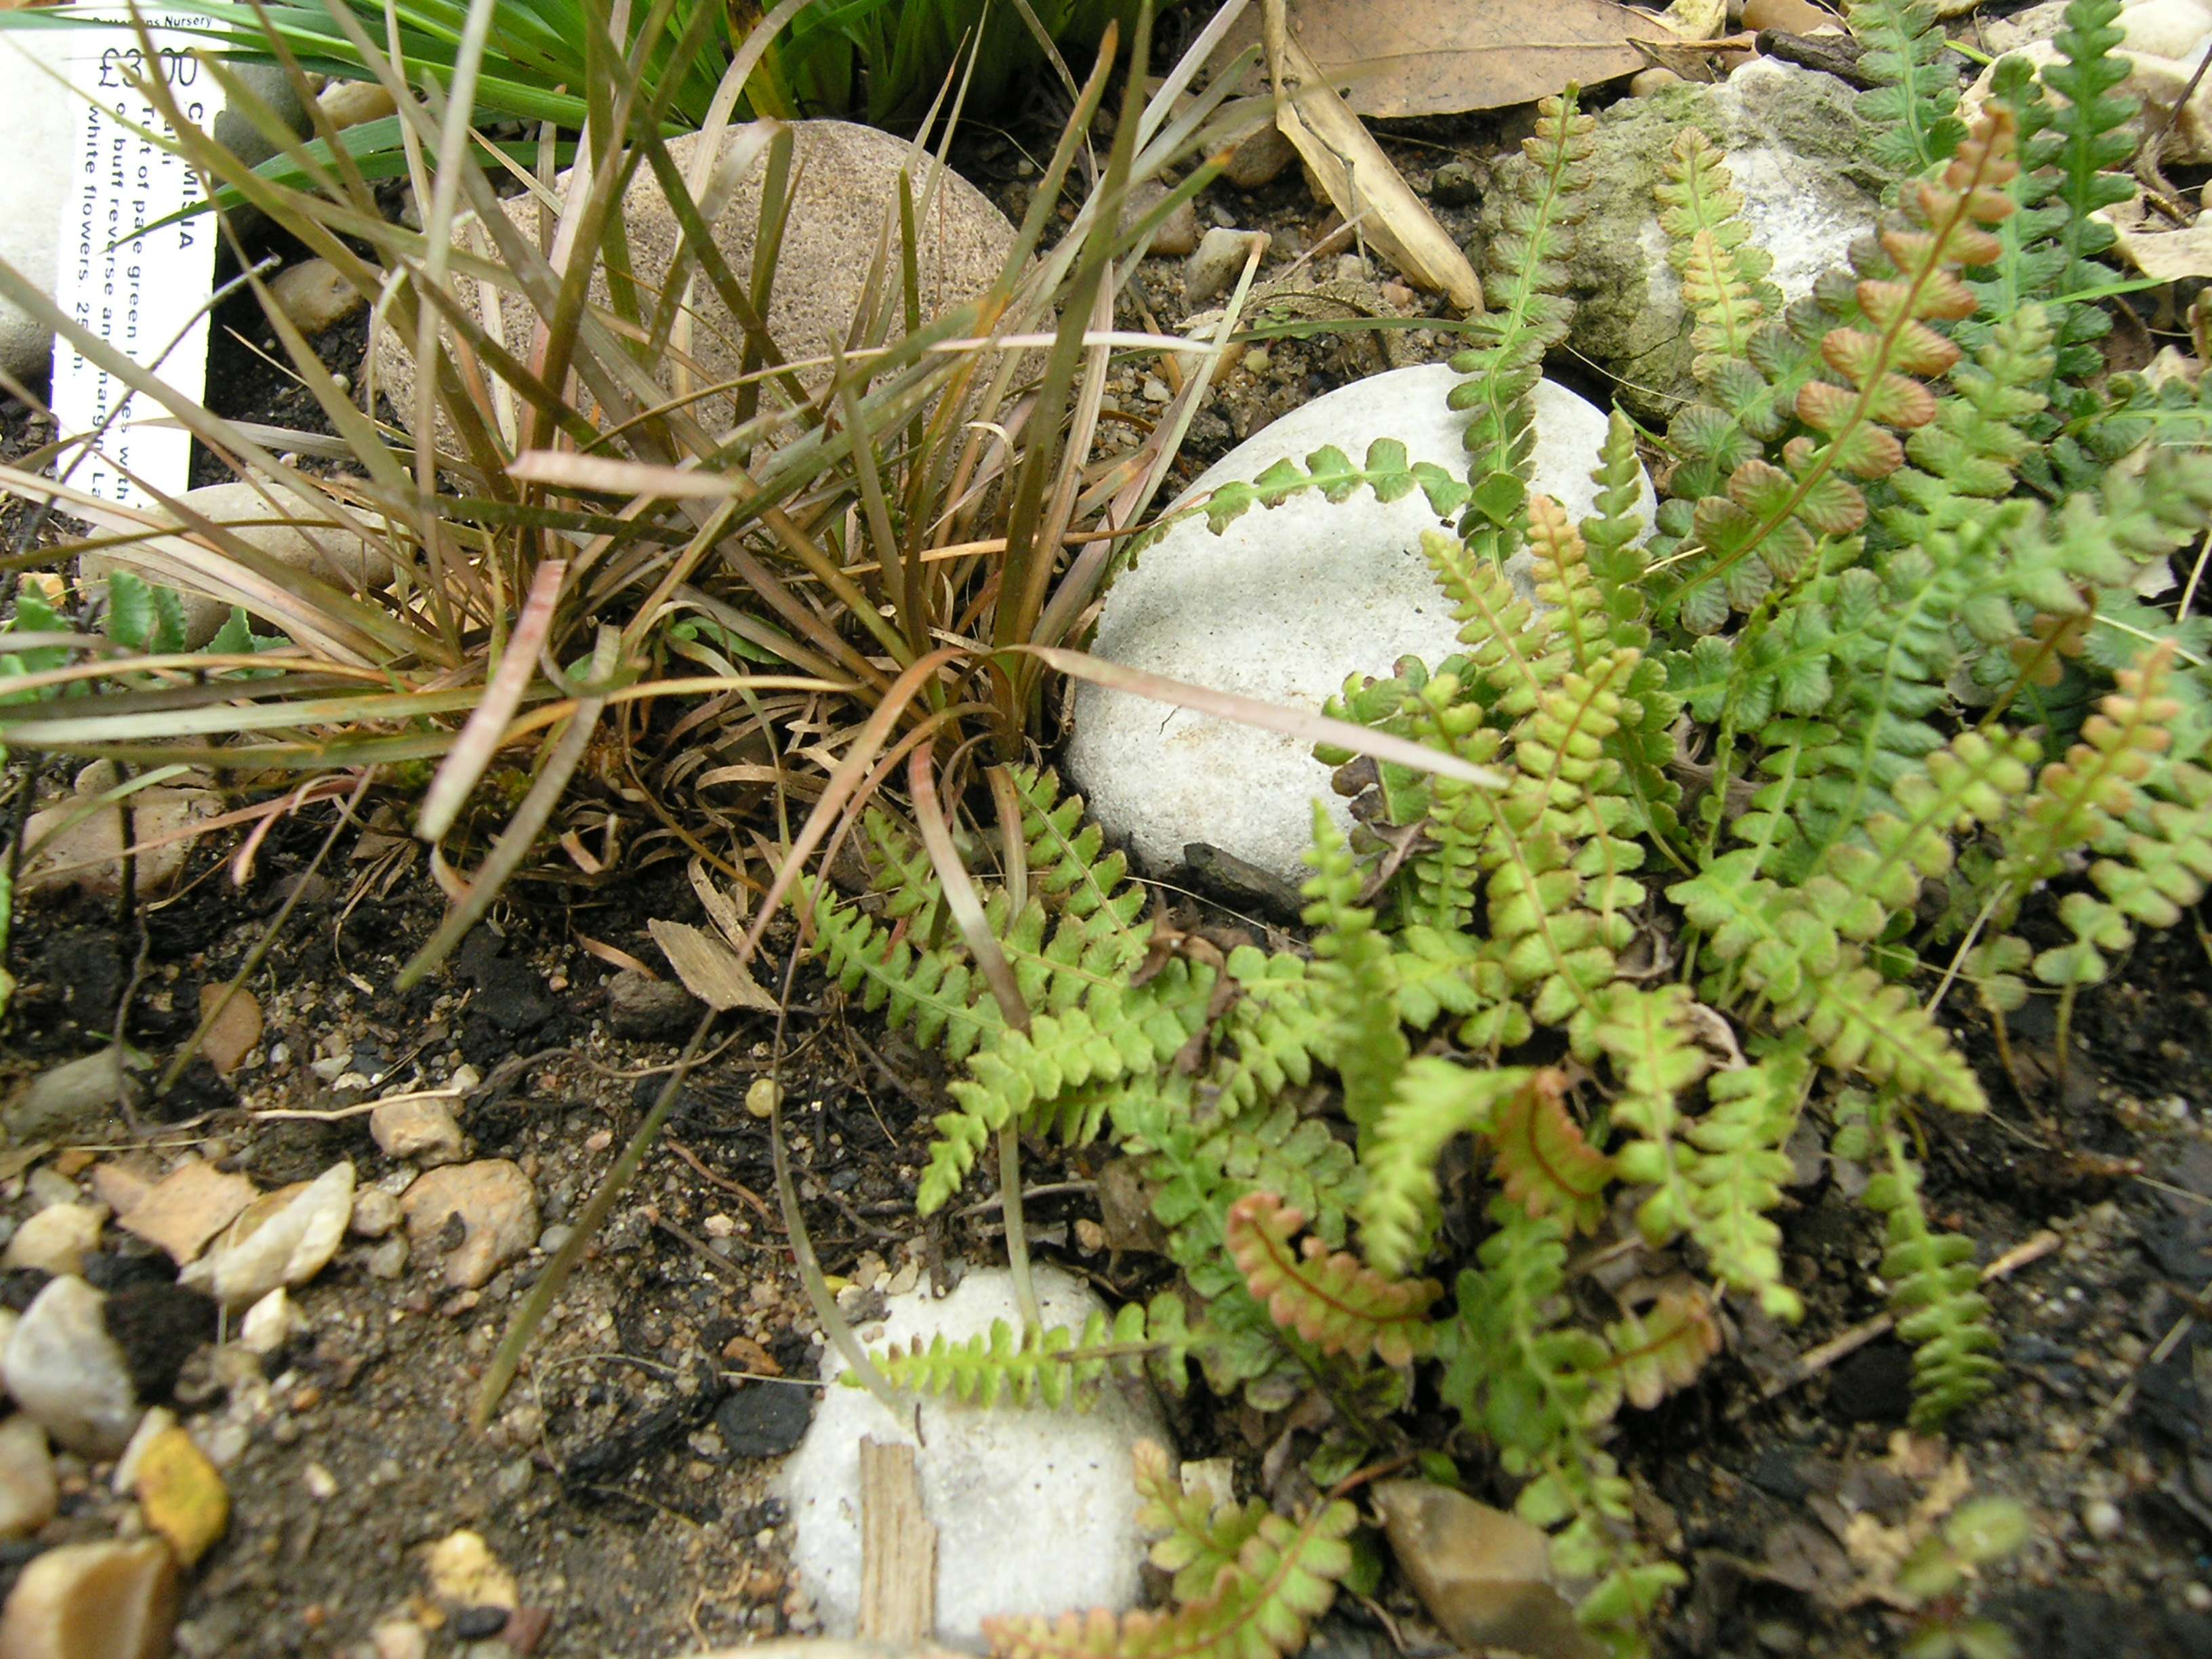 Blechnum penna marina subsp. alpina